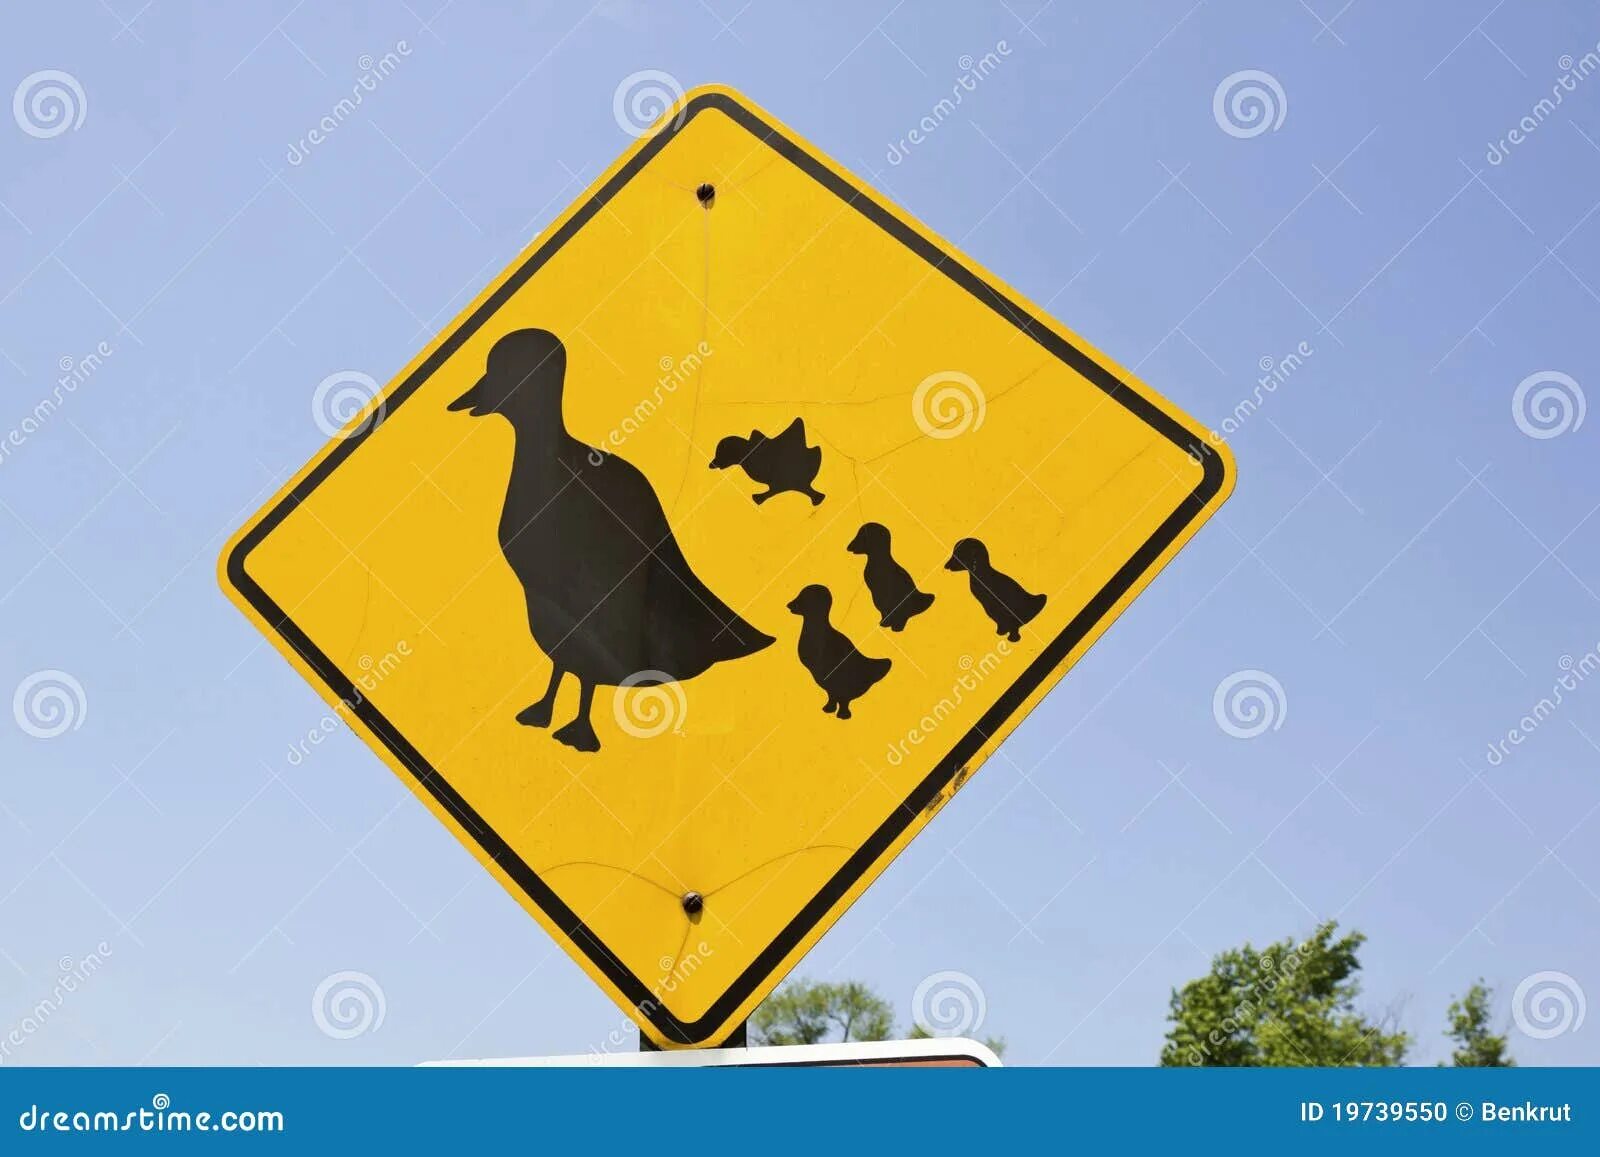 Знак с утками. Дорожный знак с утками. Знак осторожно утки. Знак уточки дорожный. Знак утка с утятами.